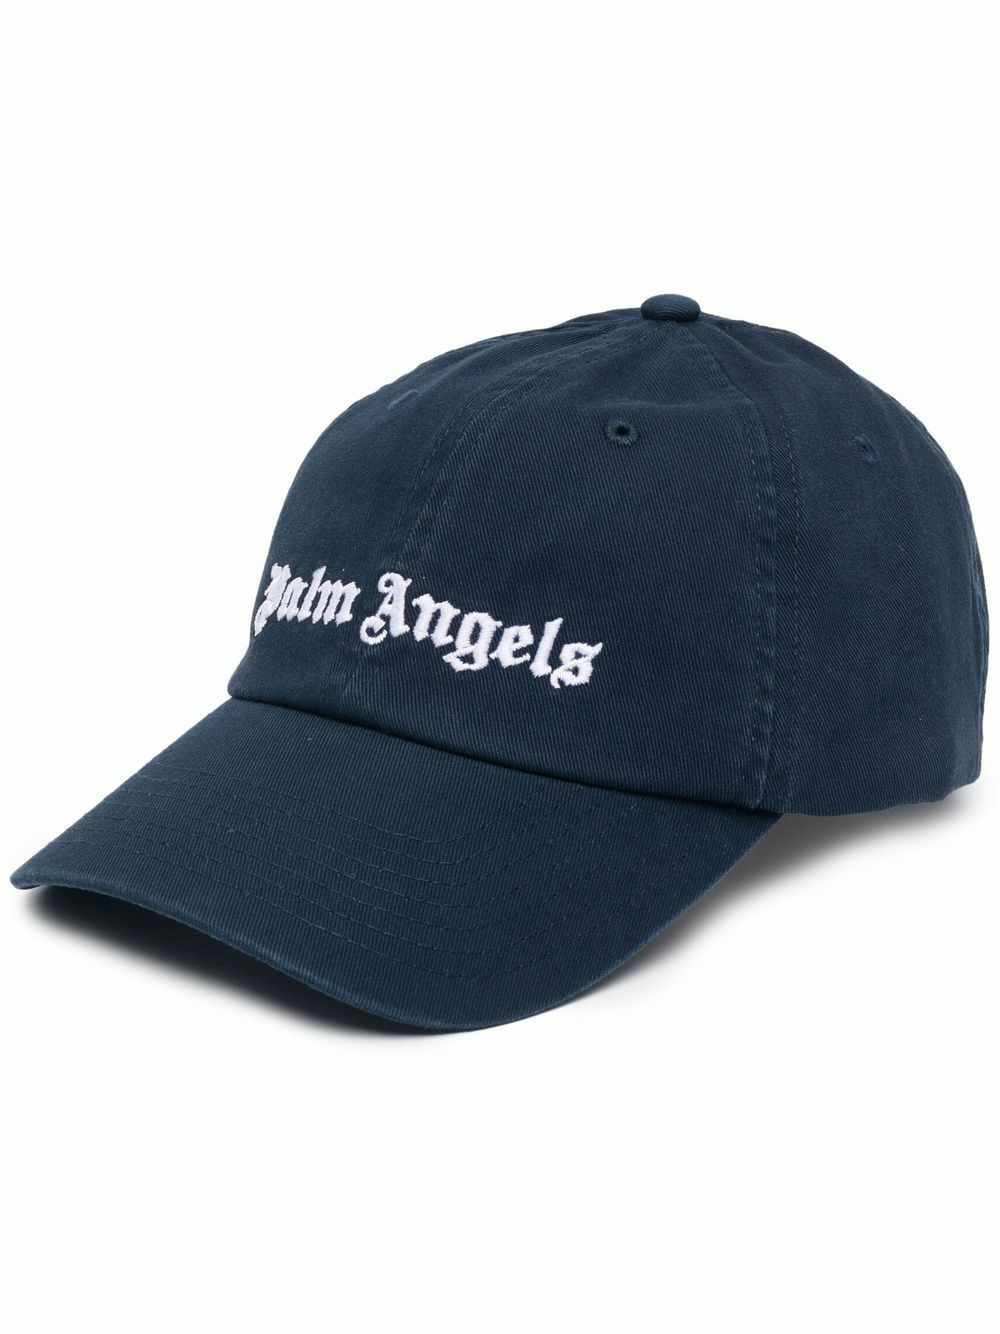 PALM ANGELS - Classic Logo Baseball Cap Palm Angels